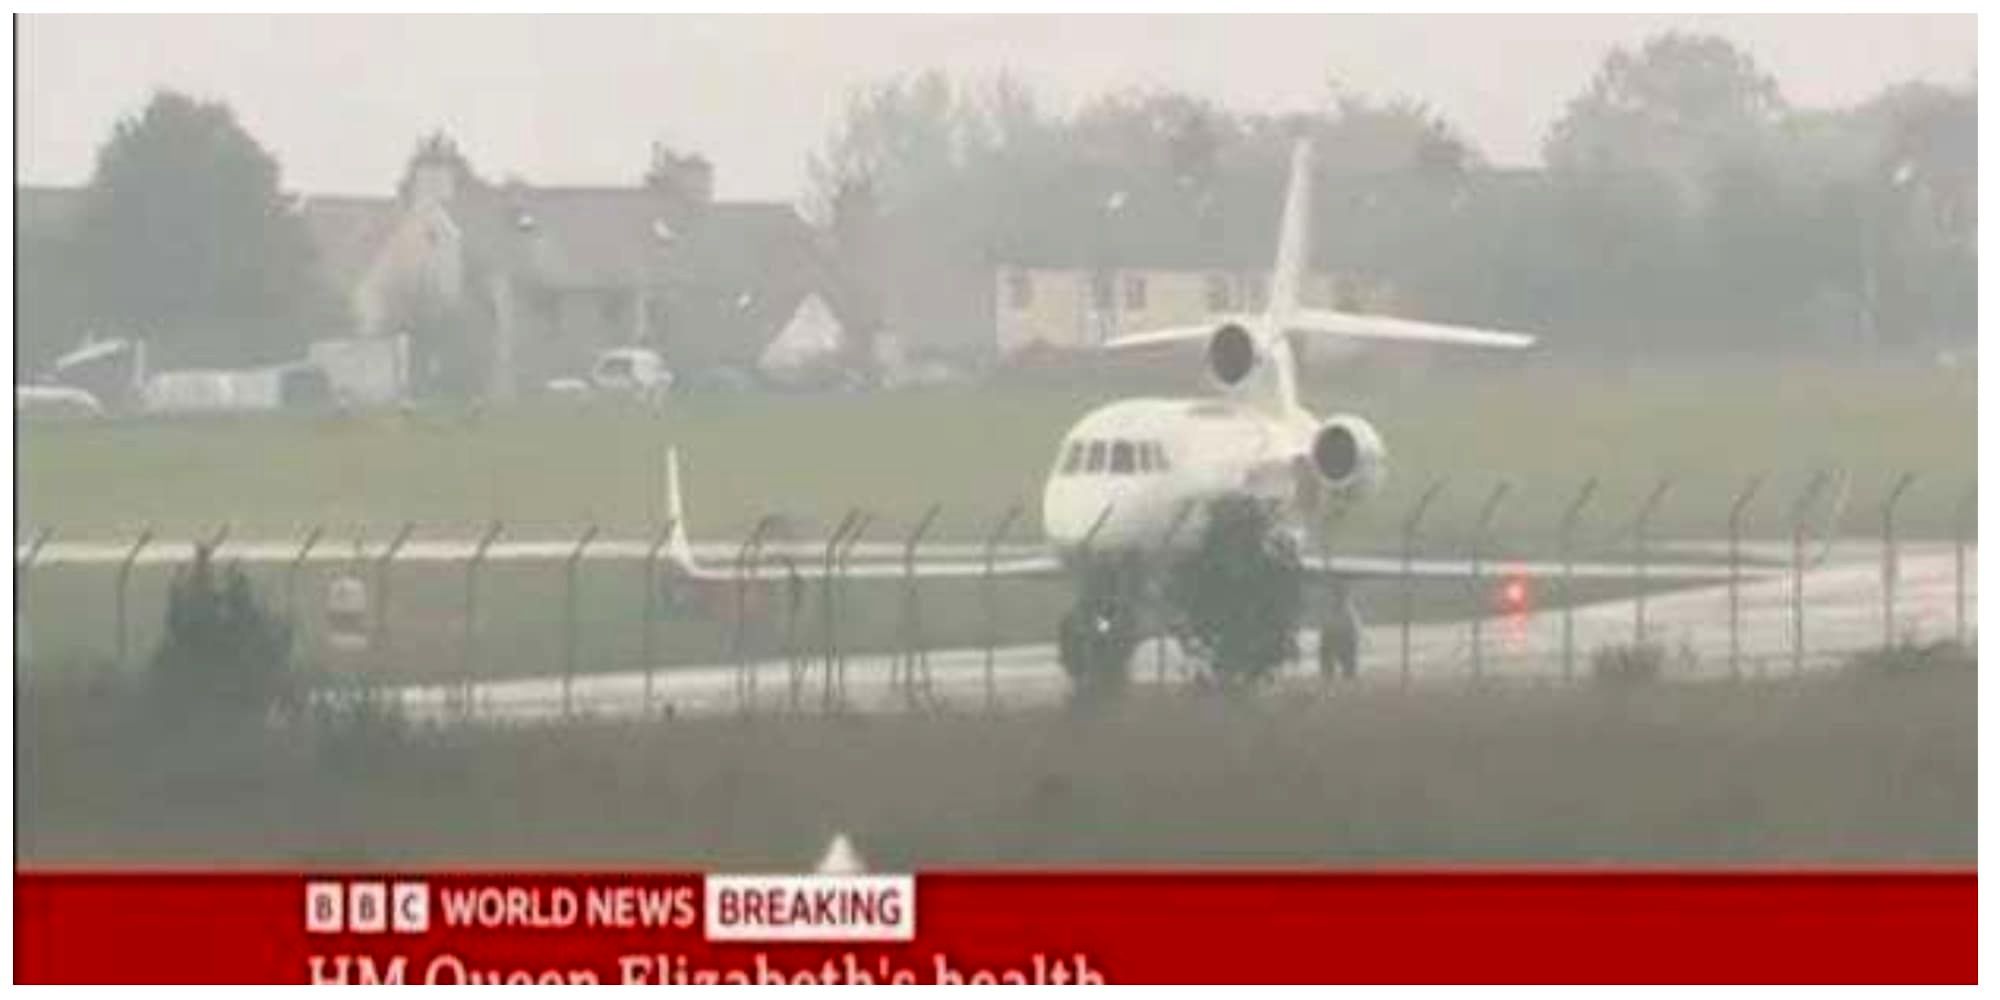 فرود هواپیمایی اختصاصی حامل  ۷ نفر از اعضای خاندان سلطنتی در نزدیک کاخ باکینگهام